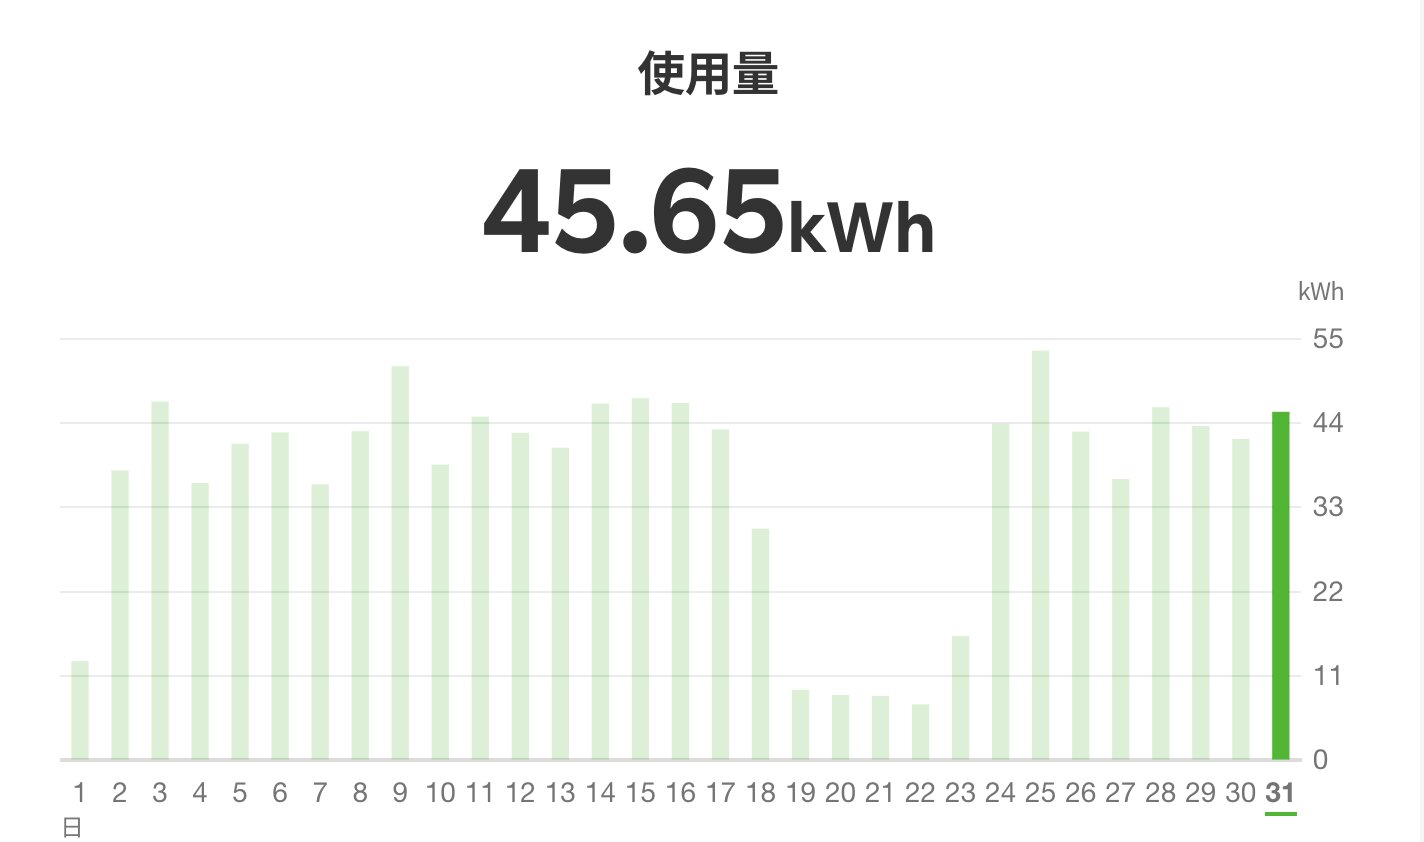 例) 1/31の電気代は45.65kWh